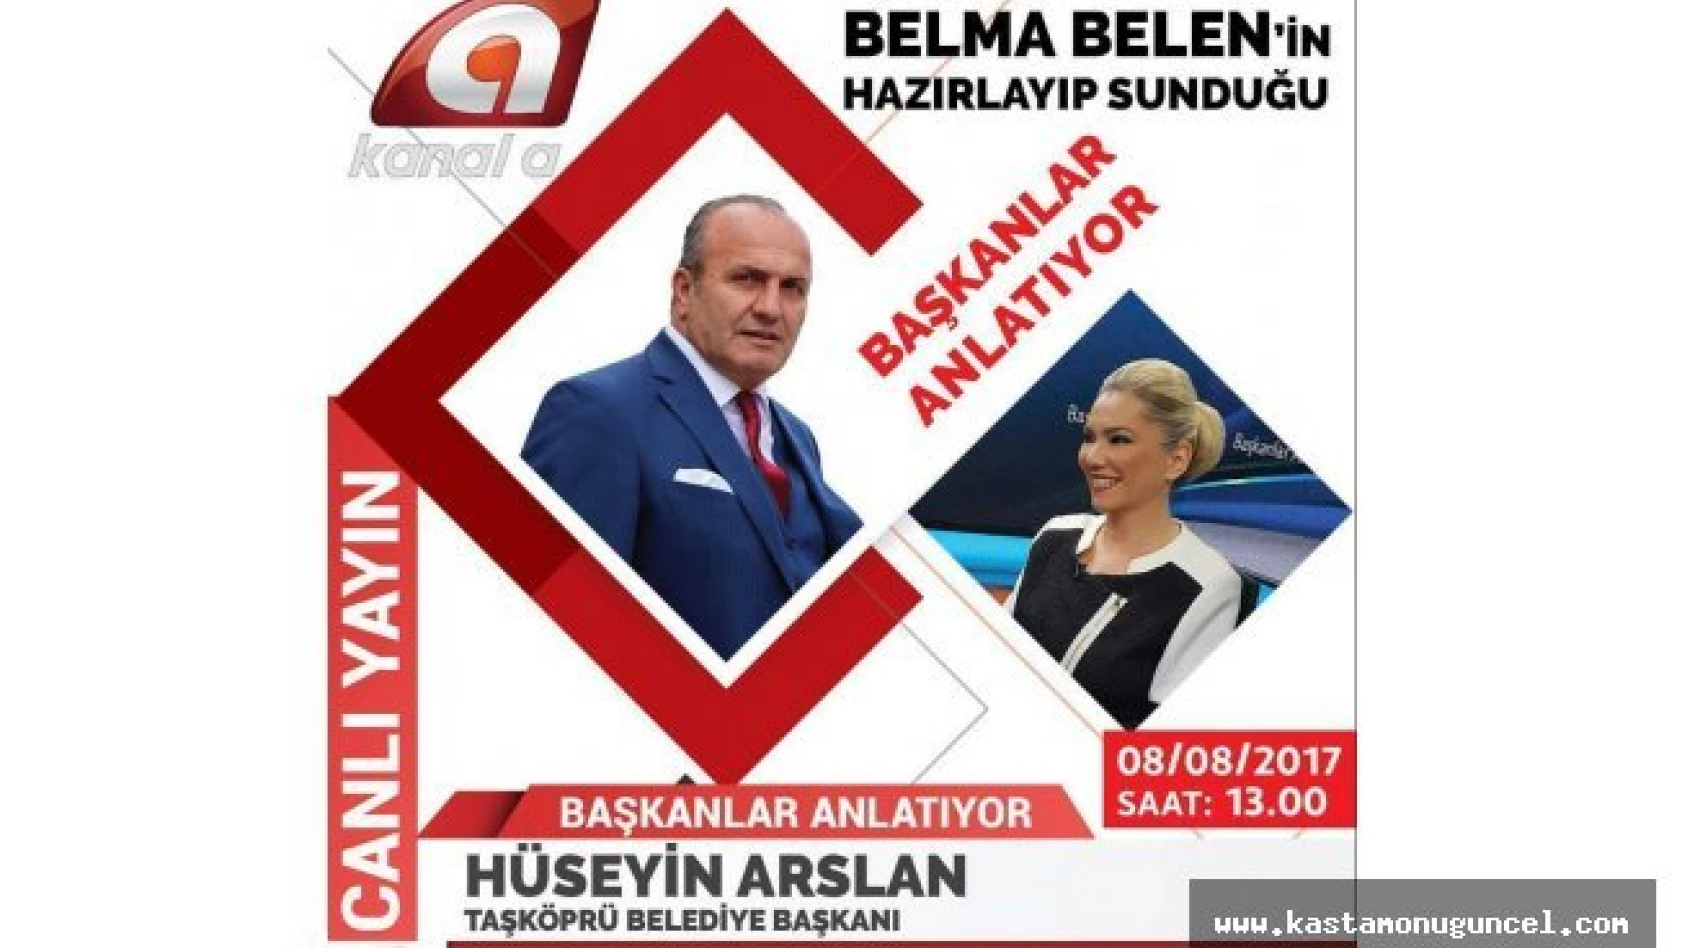 Başkan Arslan, Kanal A'ya canlı yayın konuğu olacak